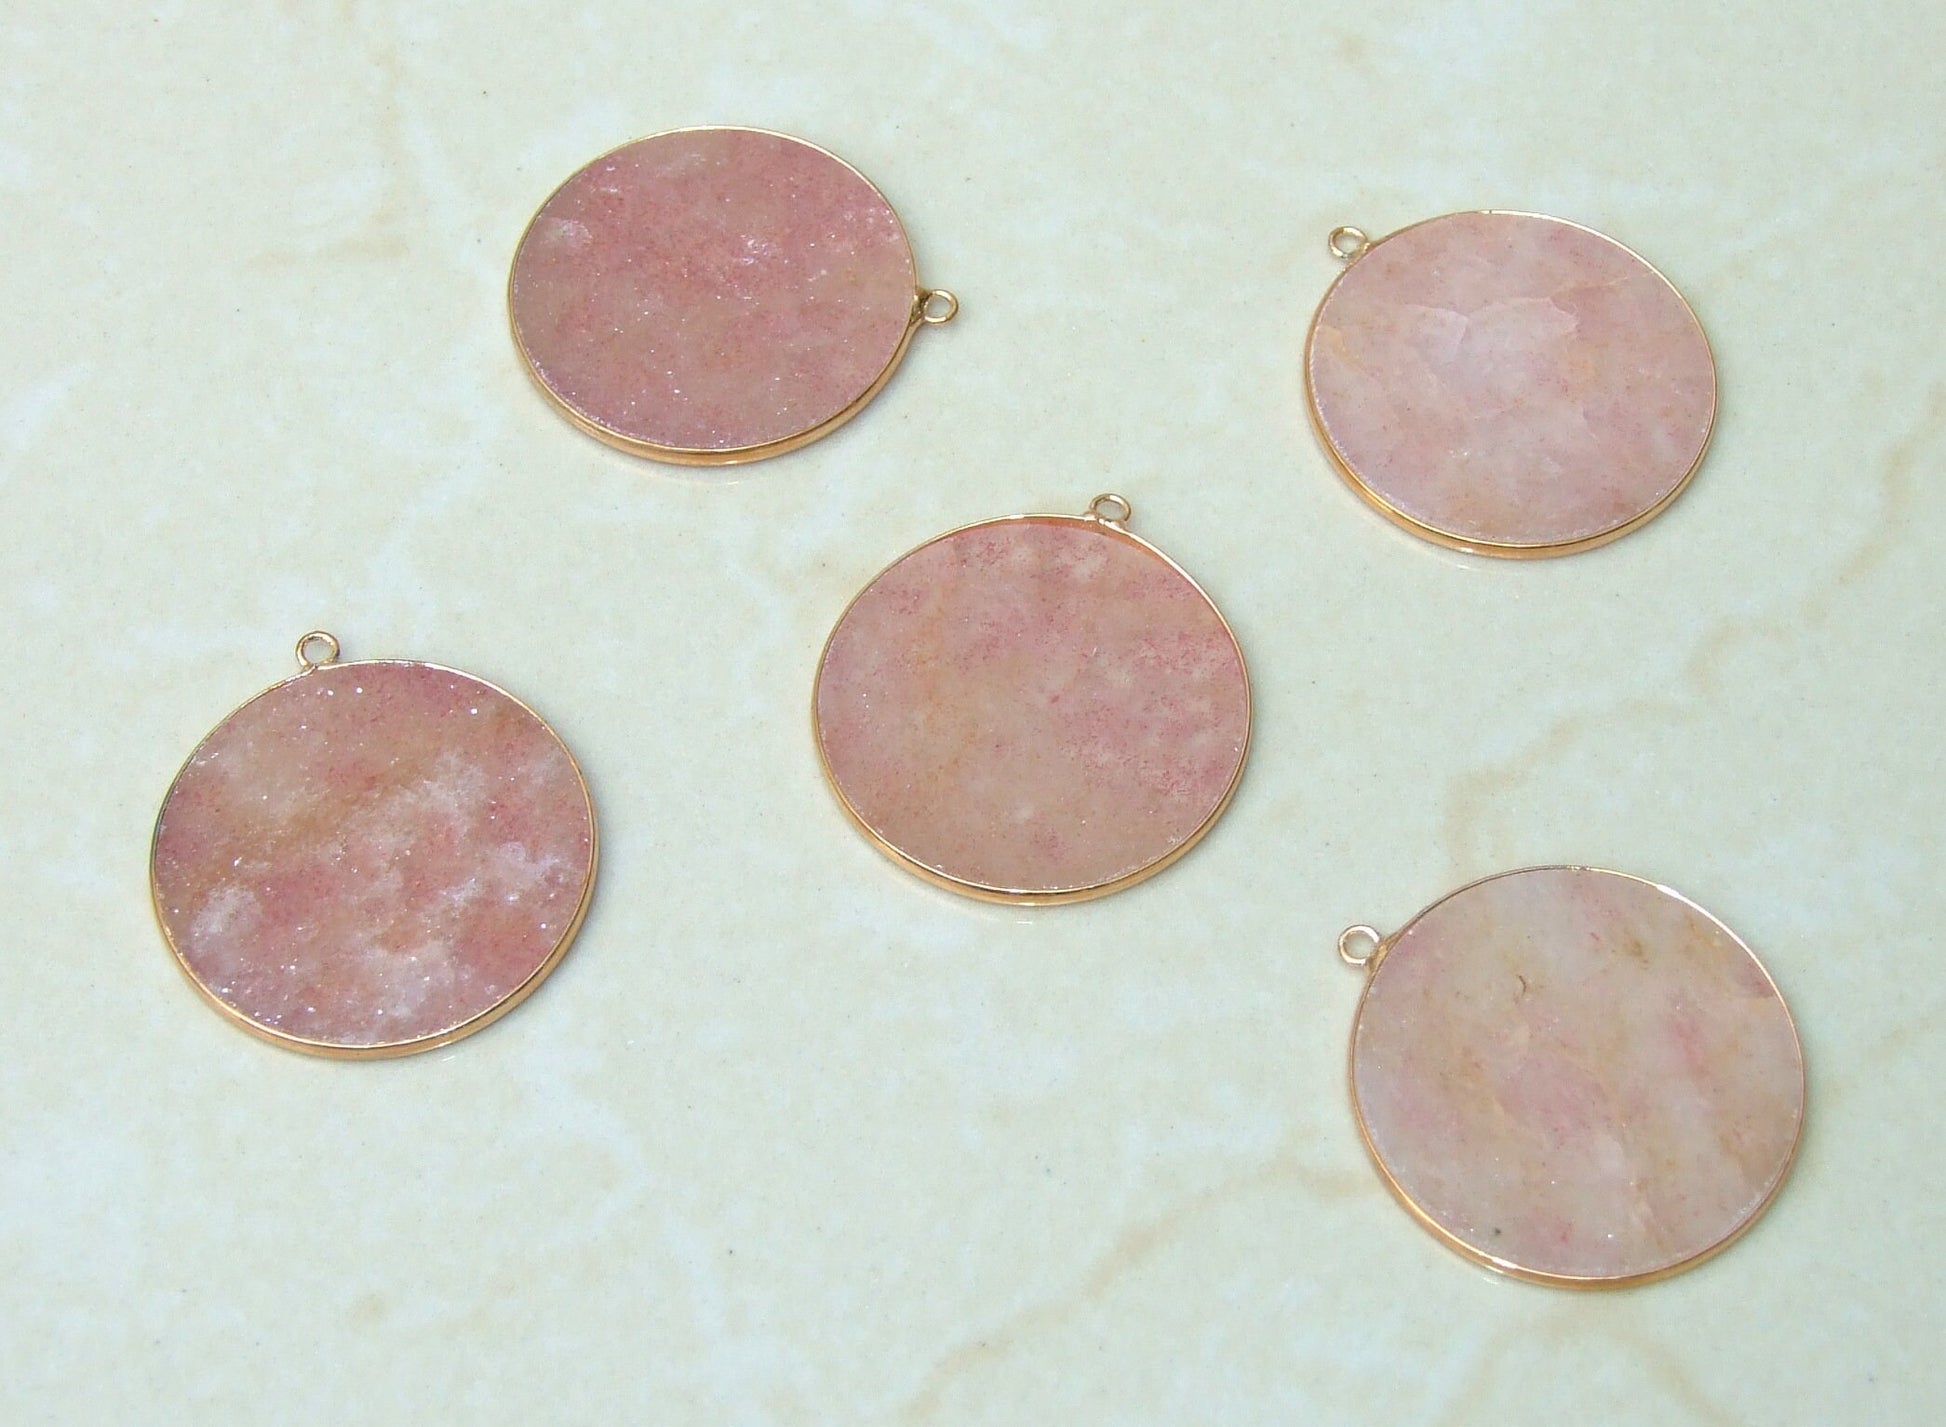 Strawberry Quartz Pendant, Gemstone Pendant, Thin, Slice Pendant, Polished, Round, Gold Bezel, Jewelry Stones, Necklace Pendant, 30mm